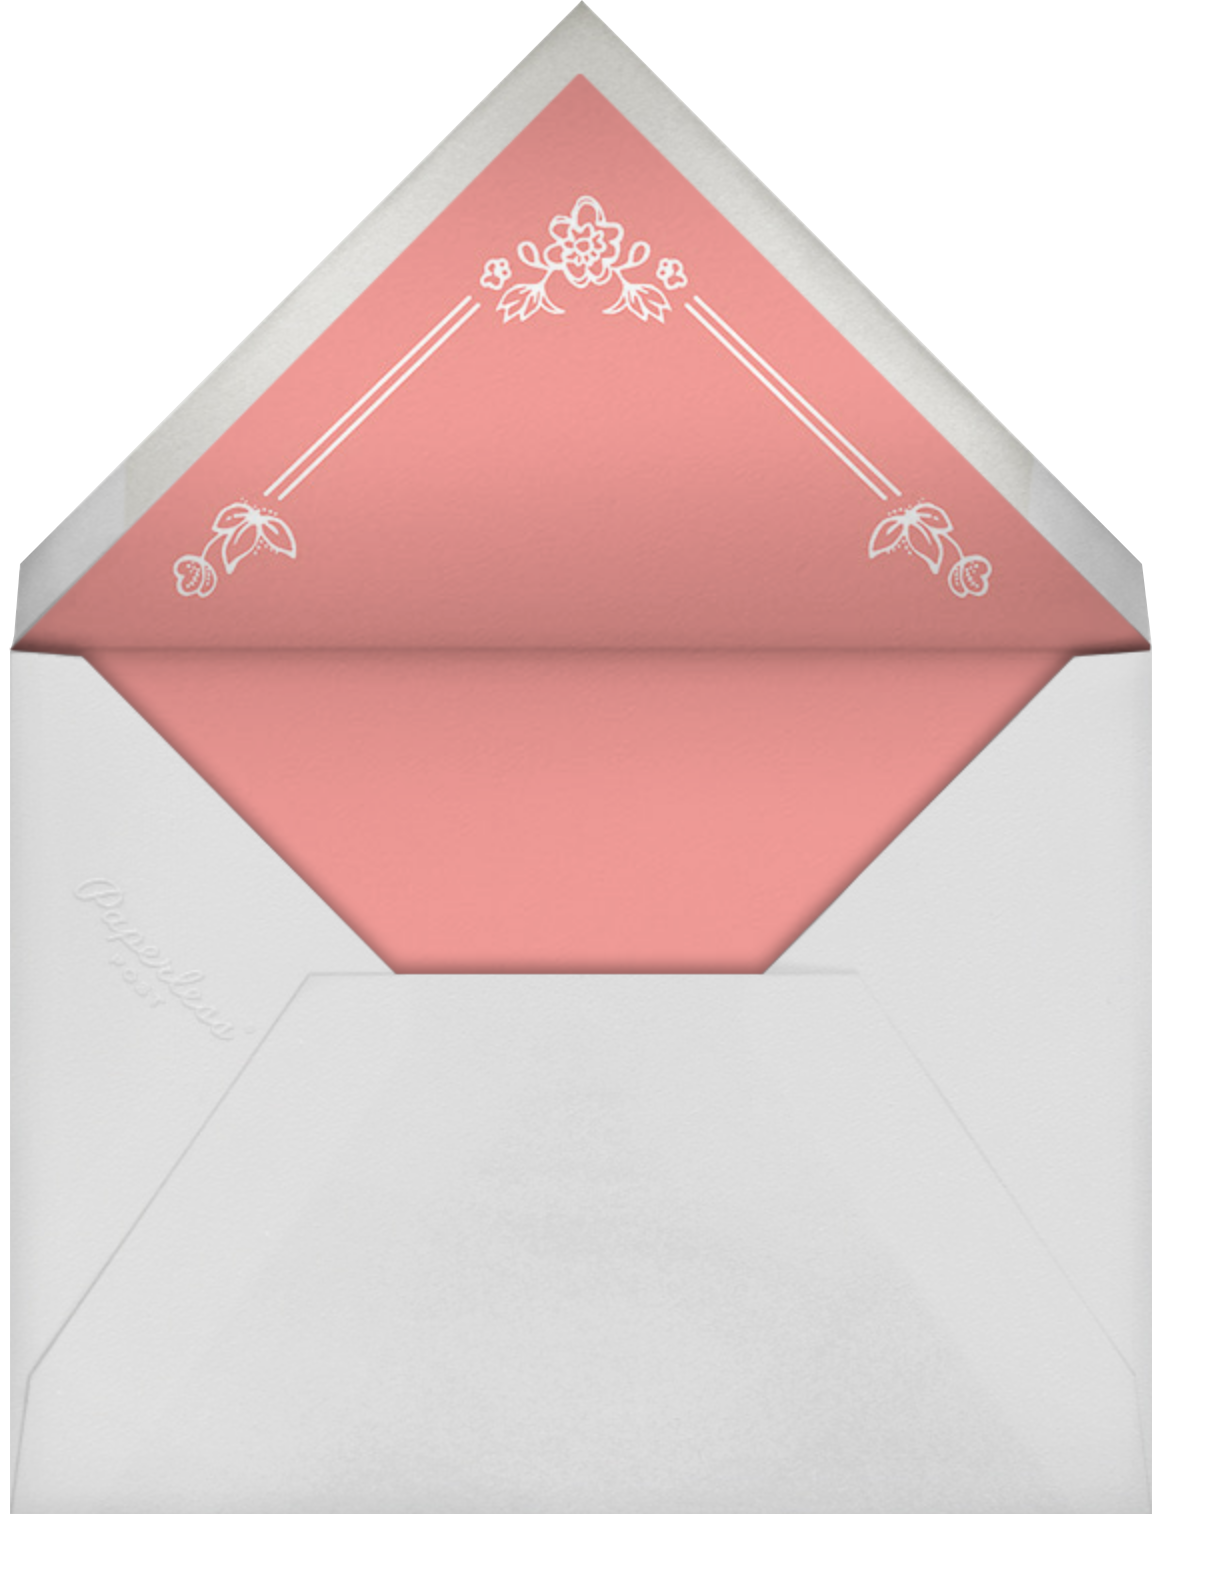 Ornate Frame - Green - Cheree Berry Paper & Design - Envelope